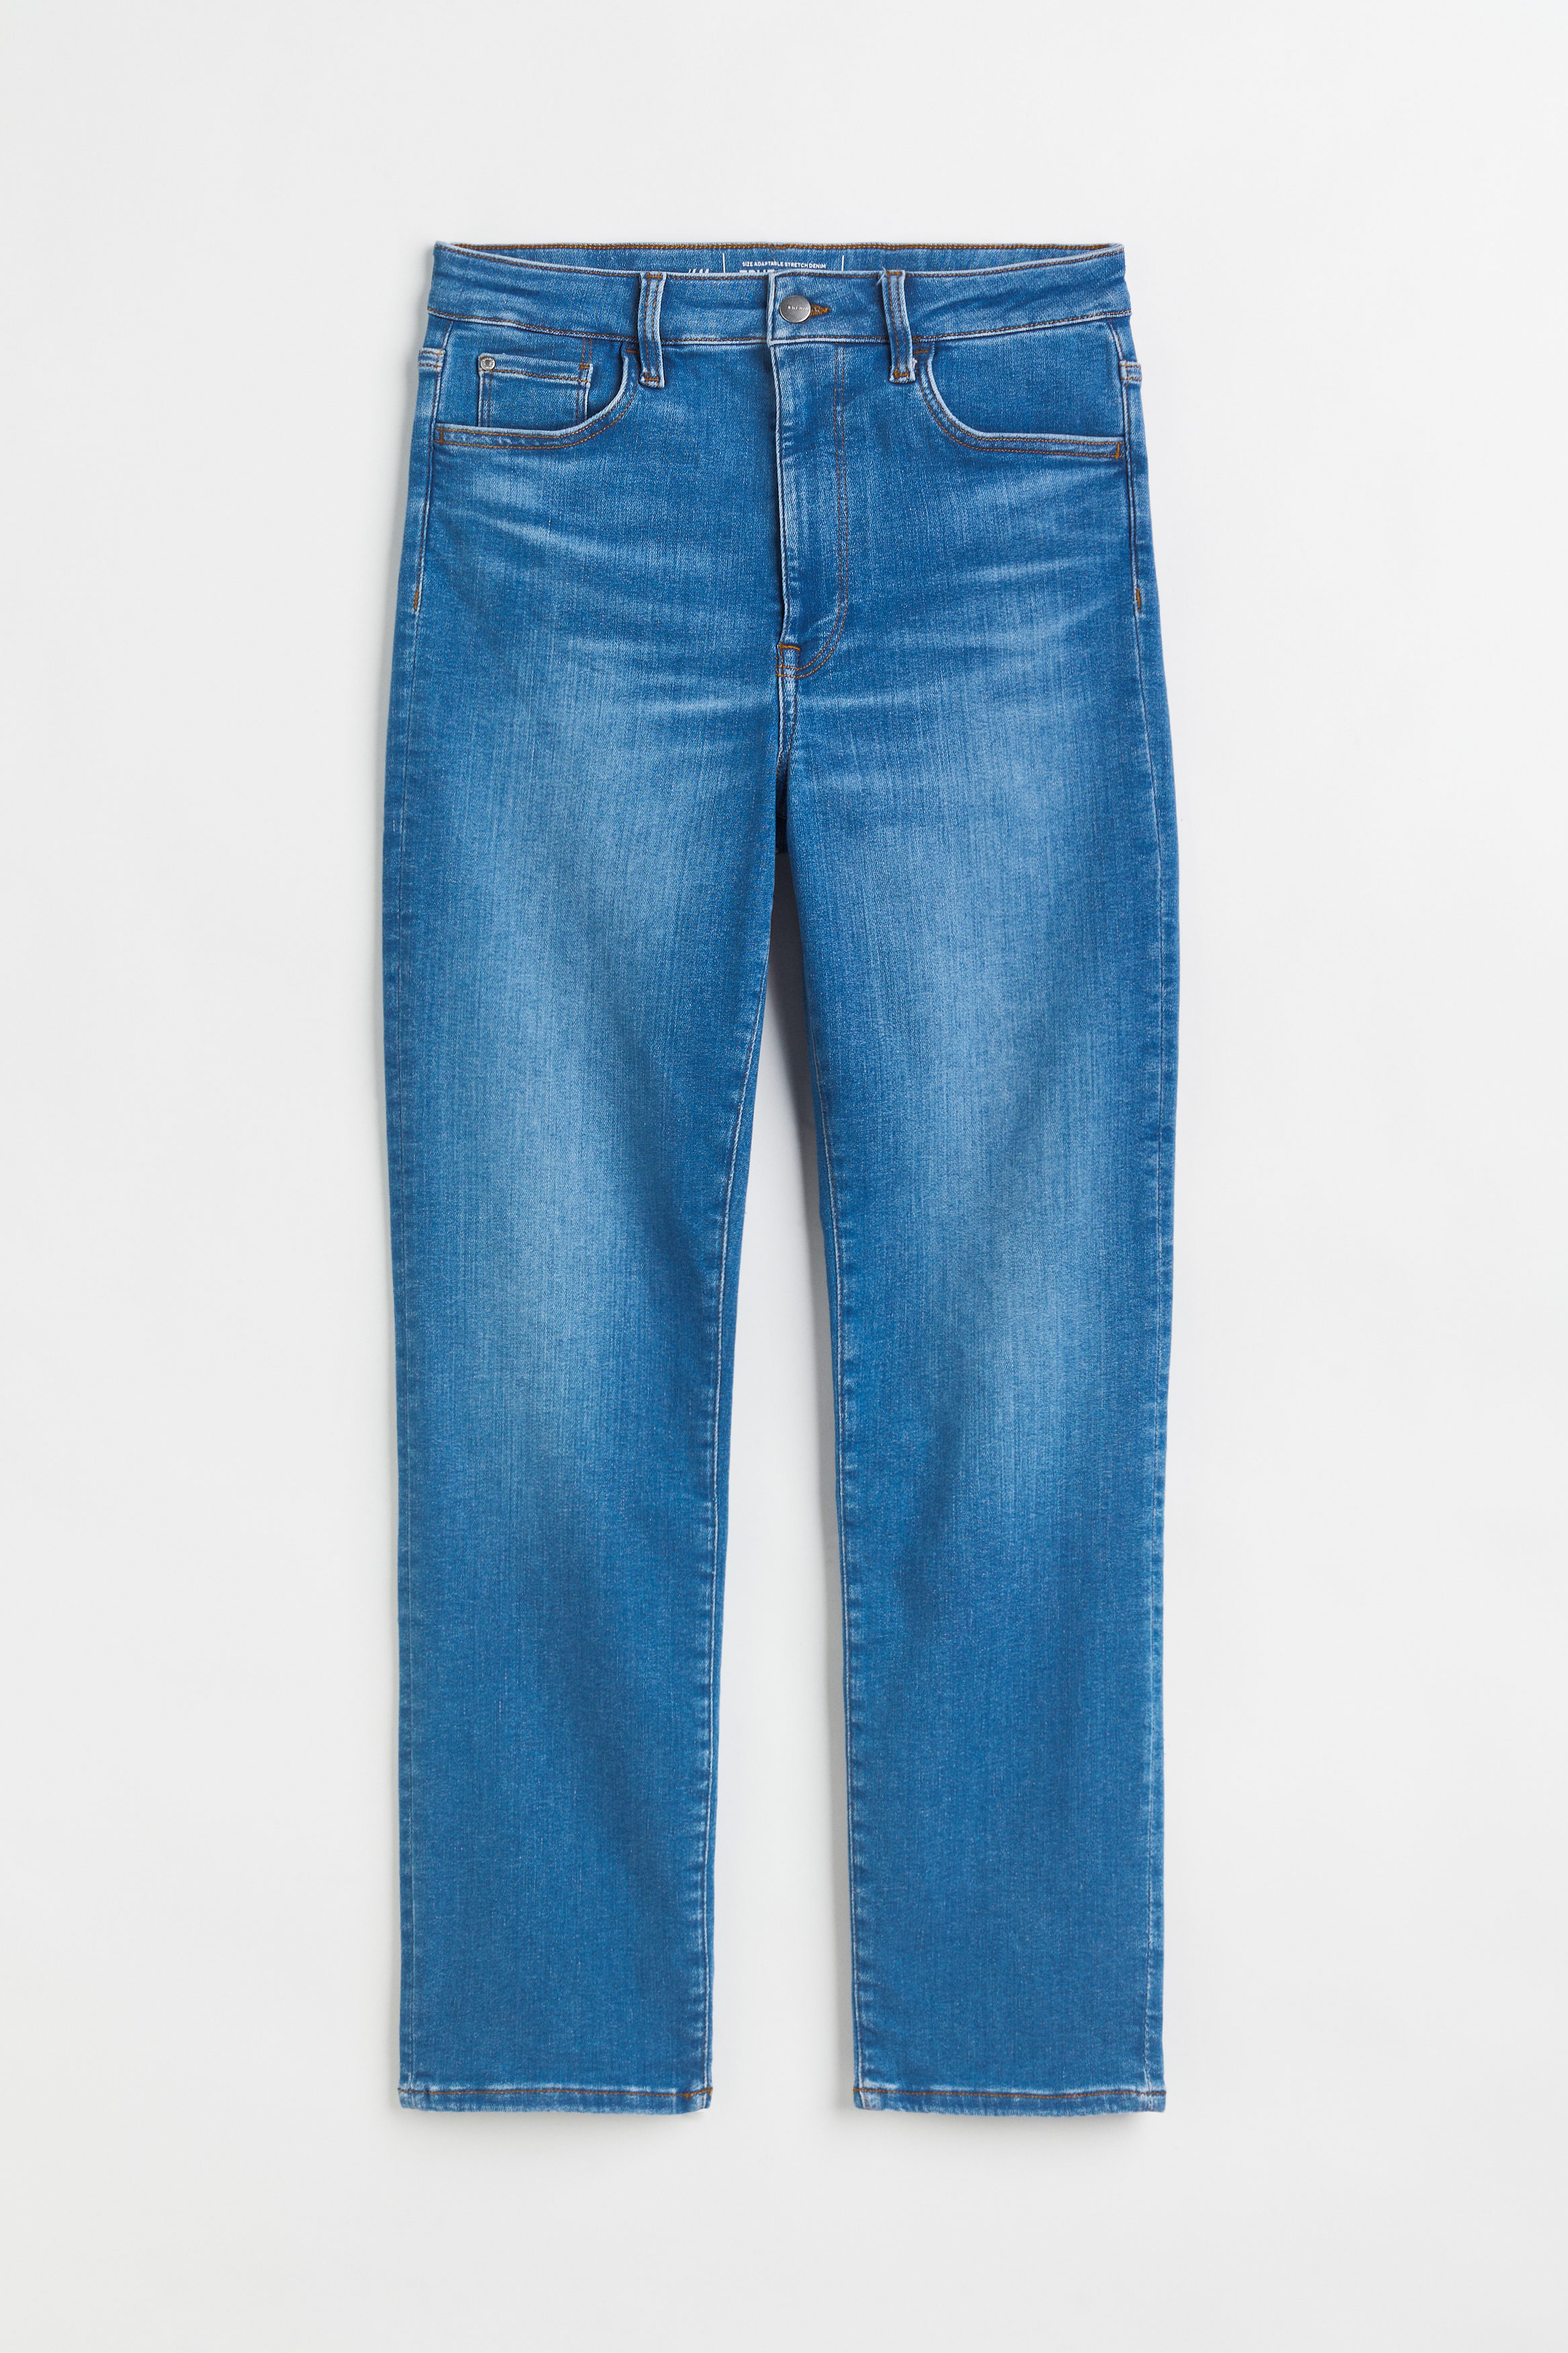 Billede af H&m+ True To You Slim Ultra High Ankle Jeans Denimblå, Skinny jeans. Farve: Denim blue 001 I størrelse XXXL